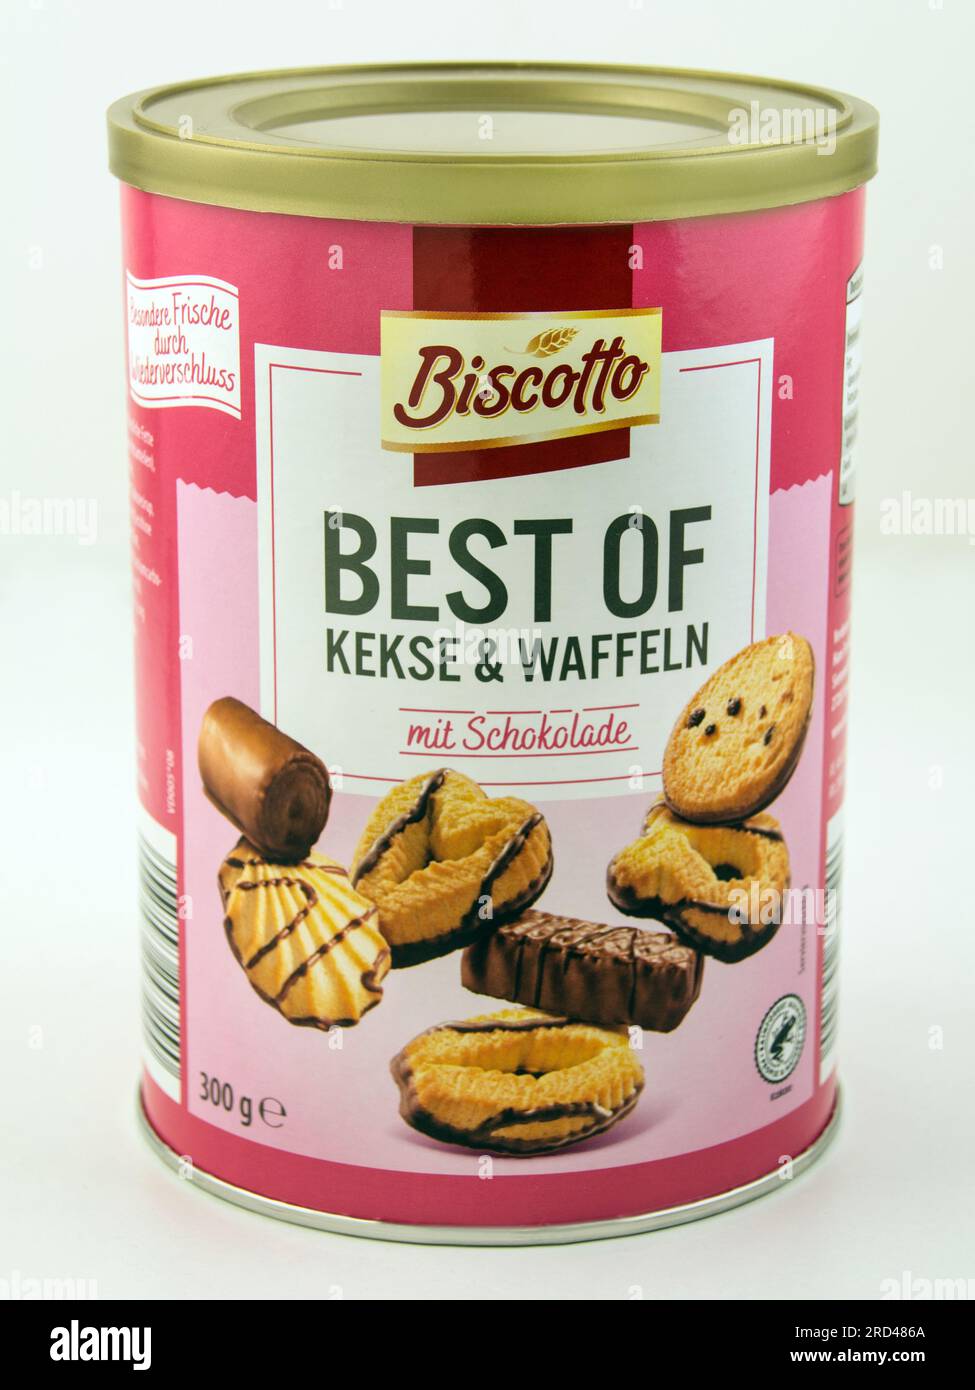 Biscotto Lo mejor de Kekse y Waffeln en la dosis con Schokolade en el tiempo de Hintergrund Foto de stock